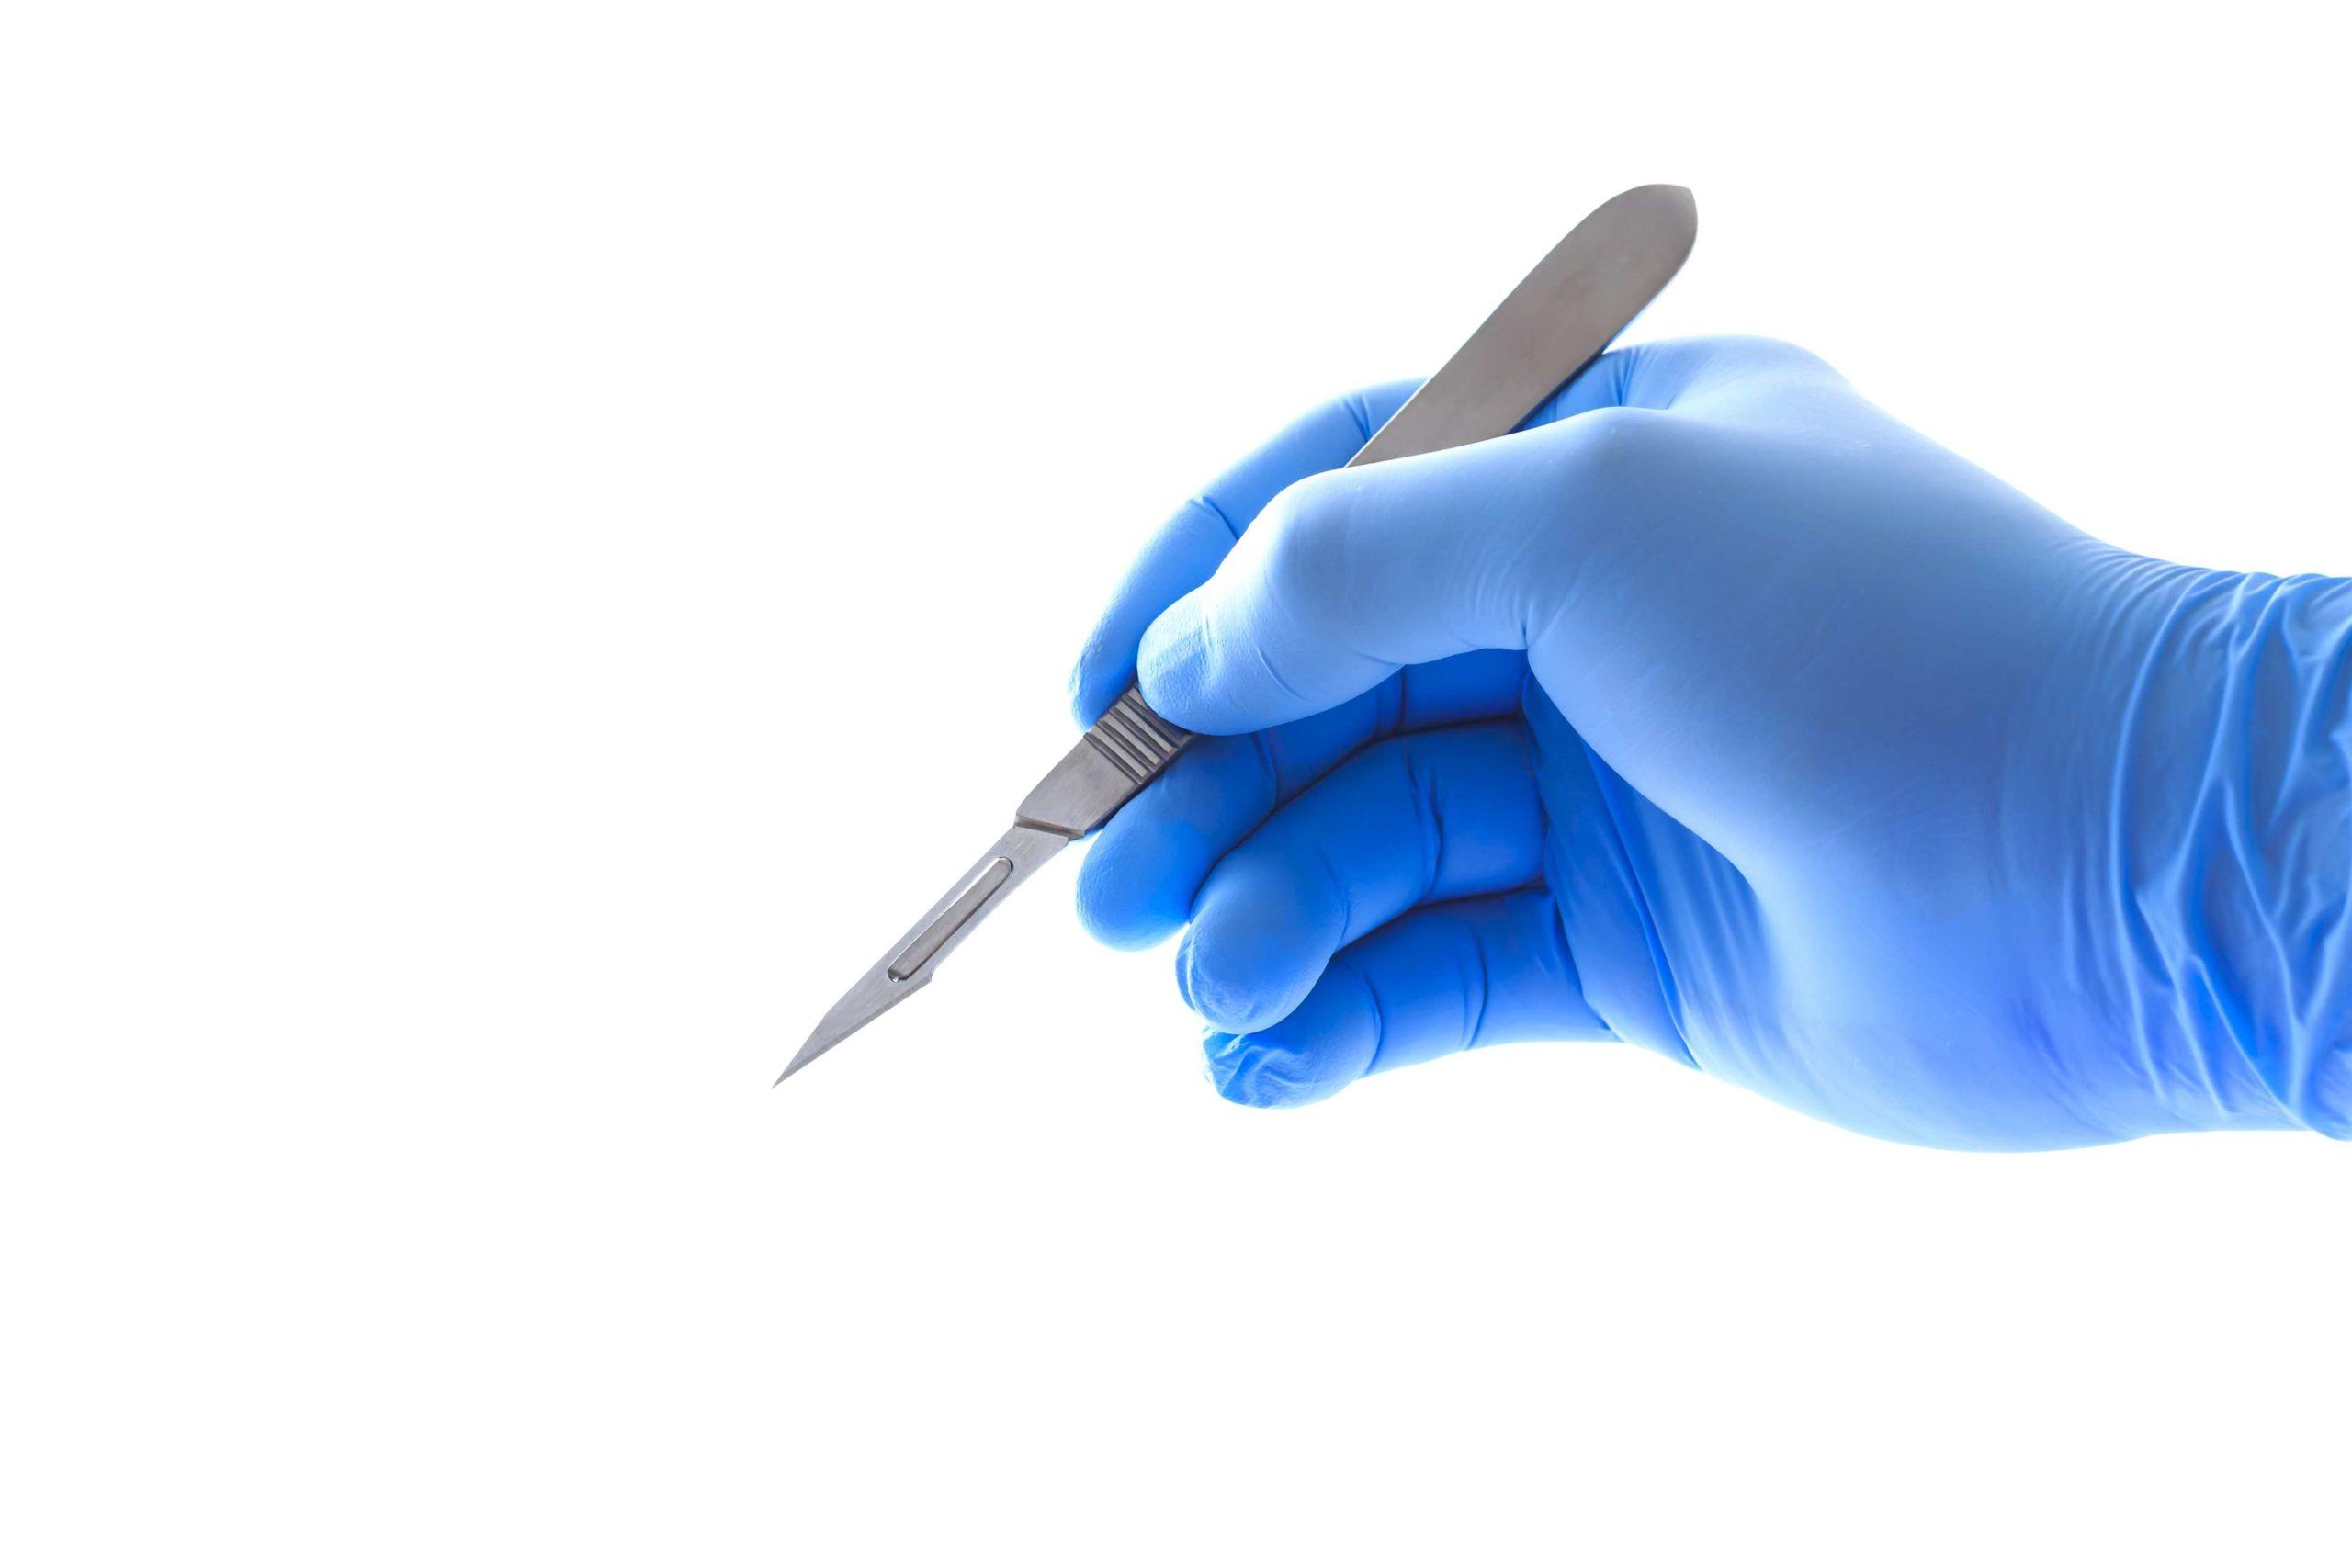 Arzthand hält ein Skalpell mit Beschneidungspfad